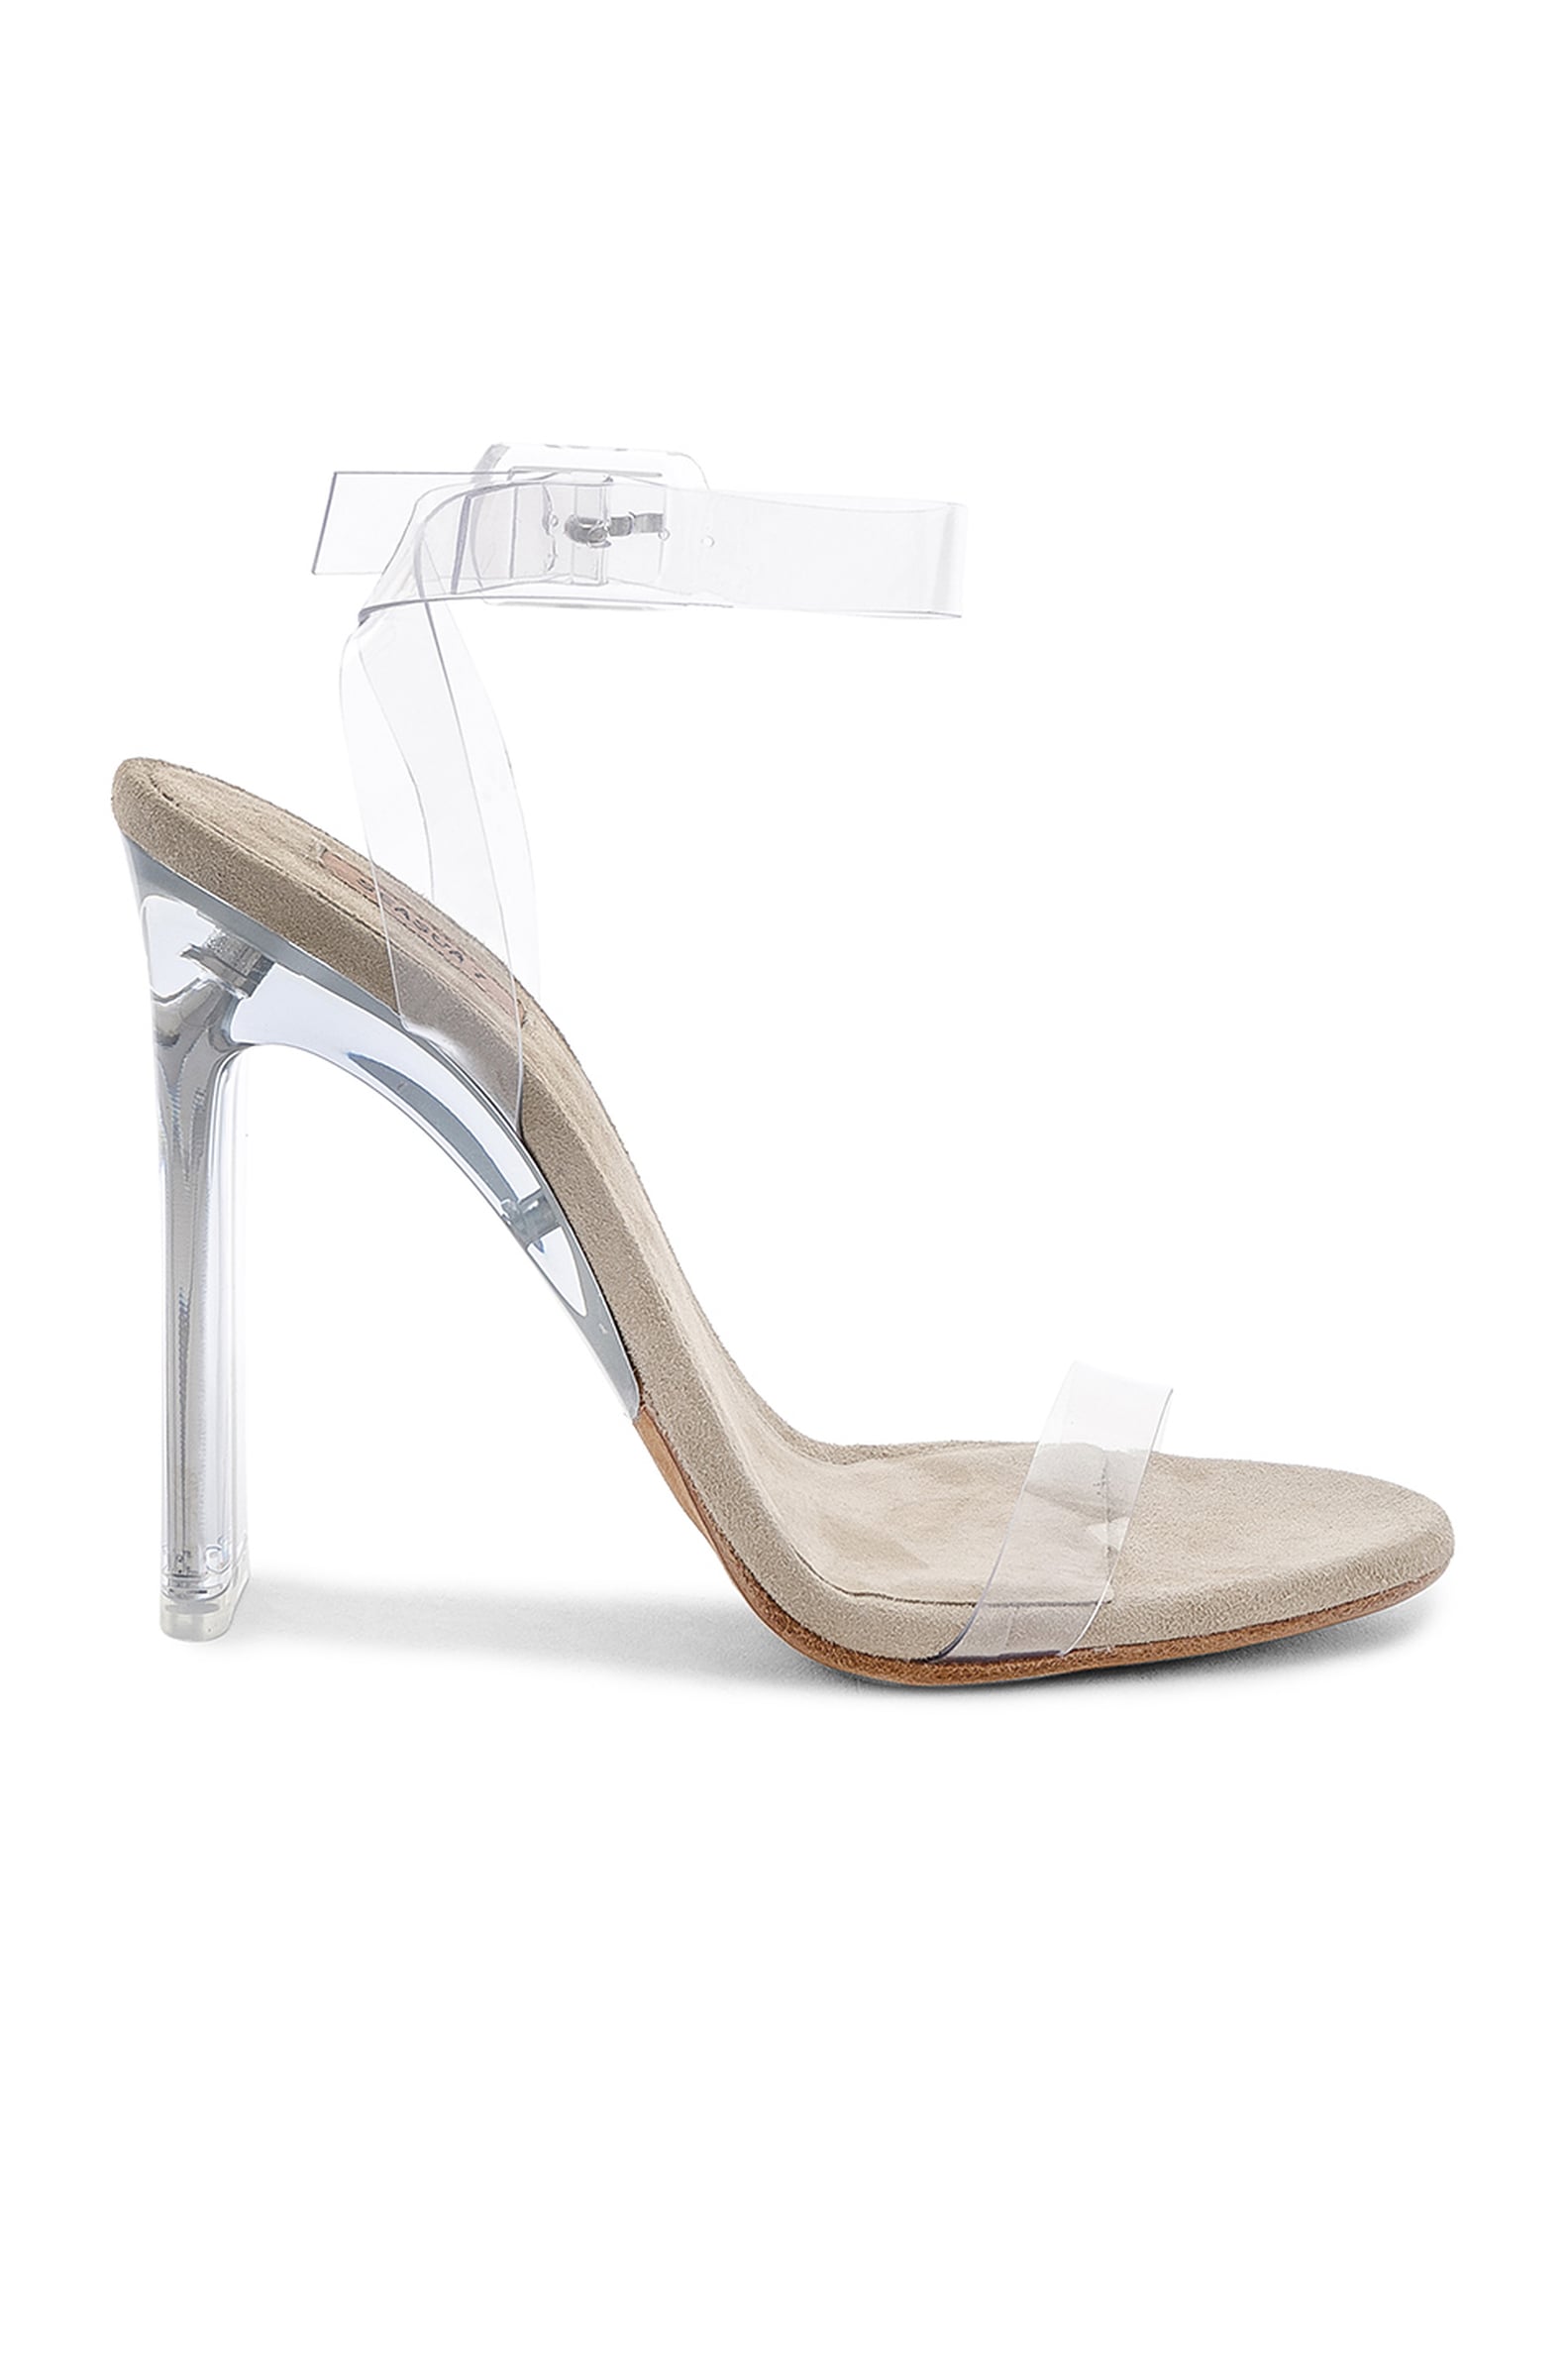 Hailey Baldwin's Sexy Shoes | POPSUGAR Fashion